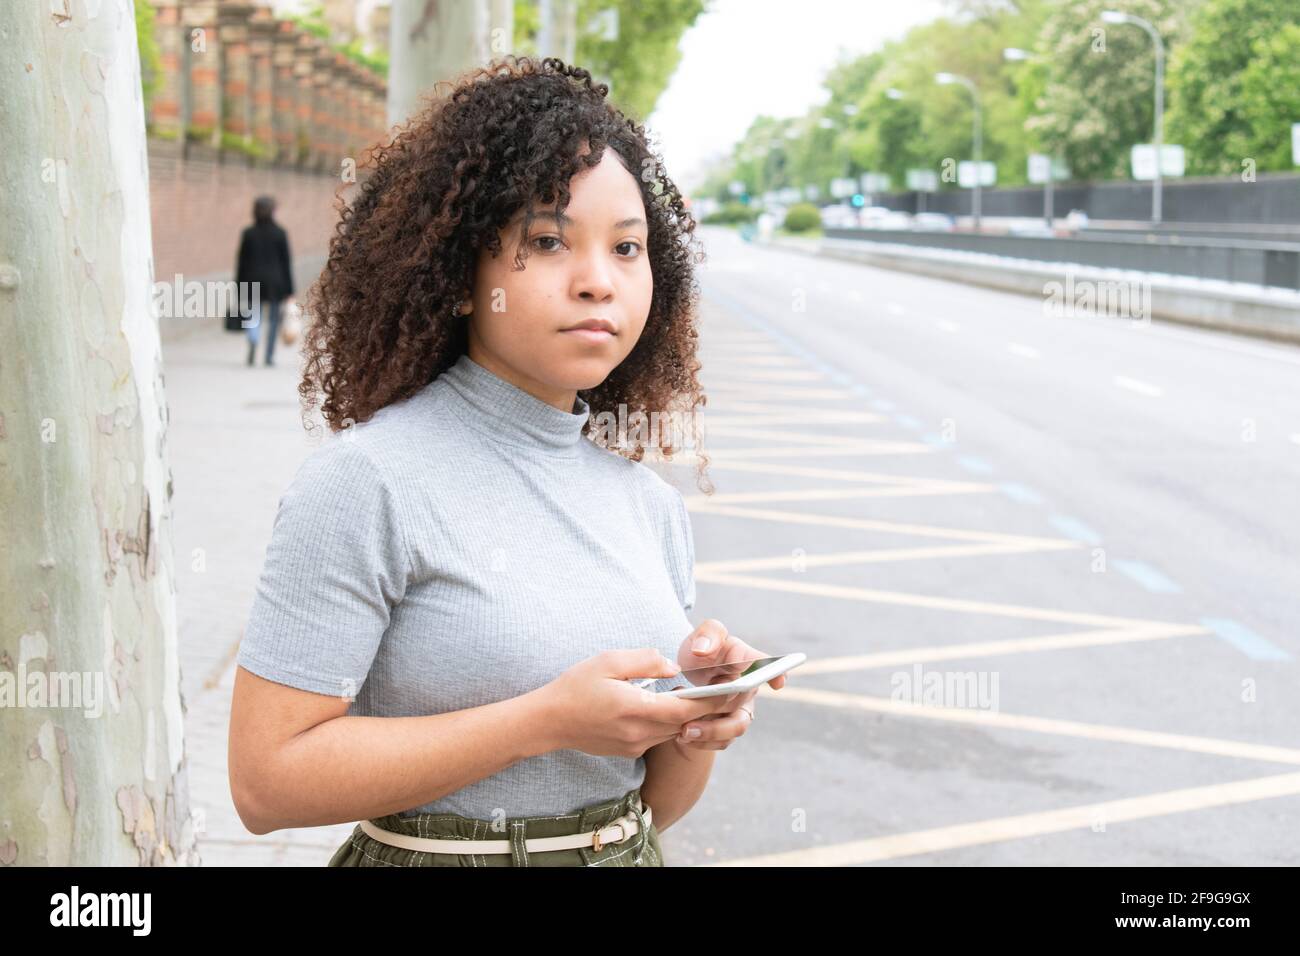 giovane ragazza nera con capelli ricci in città in attesa di un taxi o uber con cellulare in mano. Foto orizzontale. Foto Stock